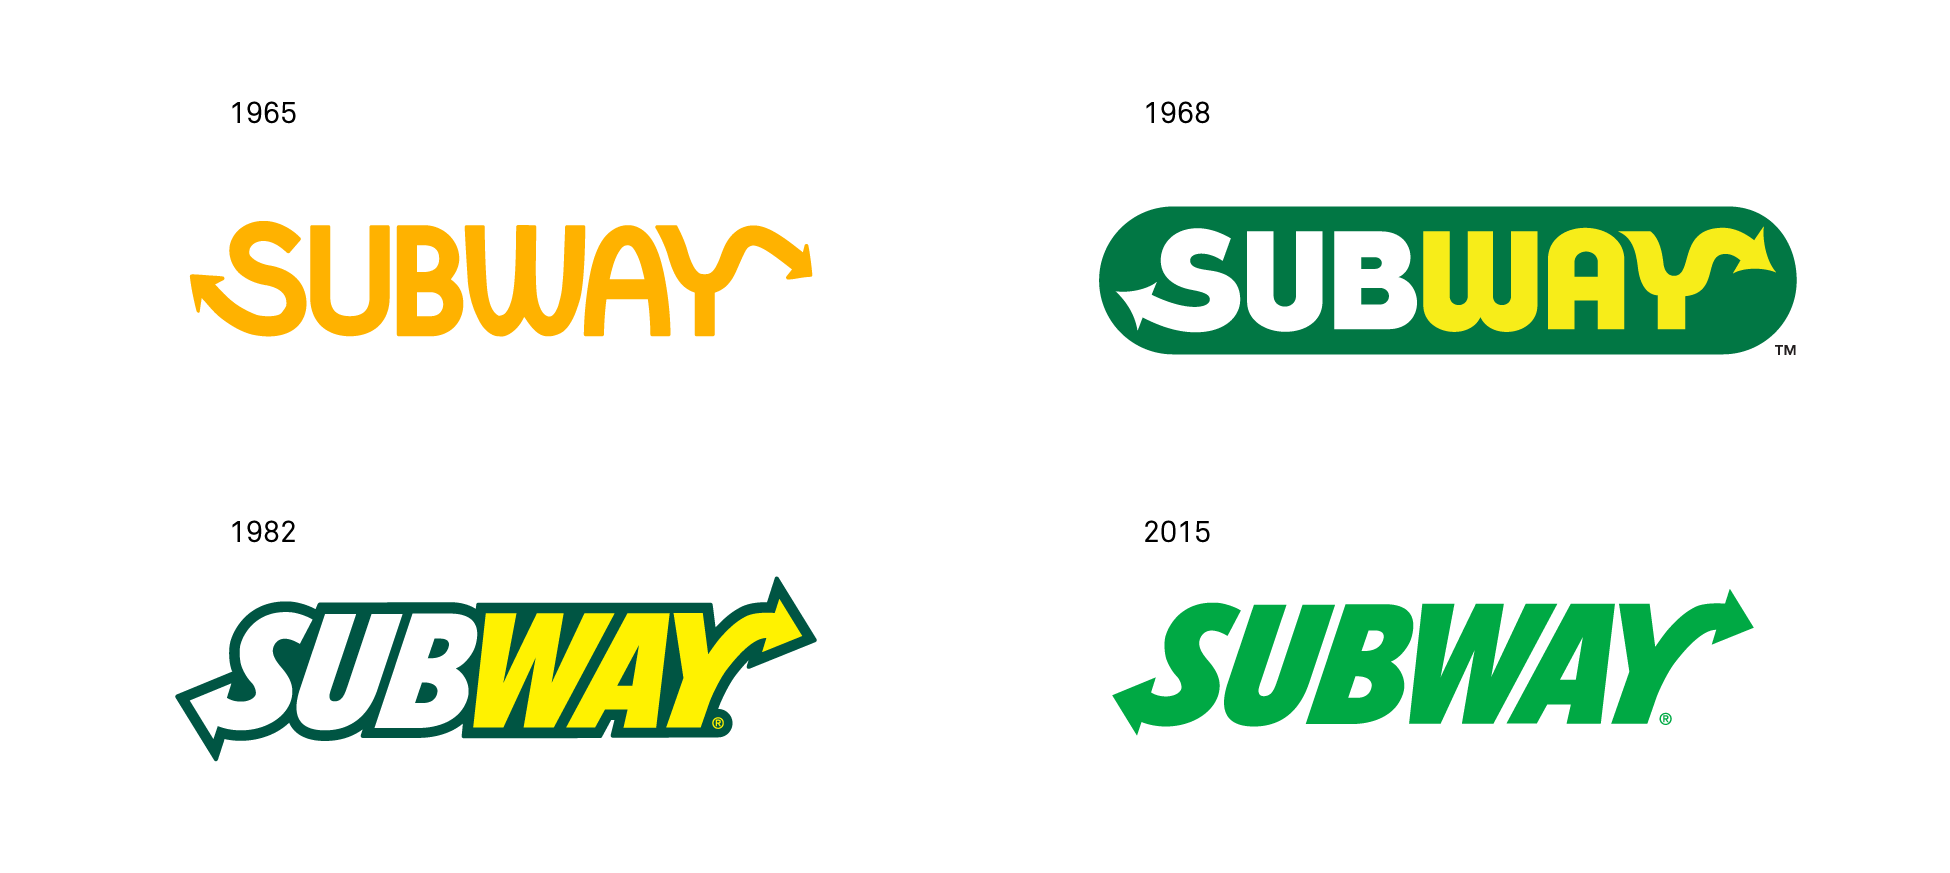 Subway Logo - Le nouveau logo de subway date de 1968 ! - Graphéine